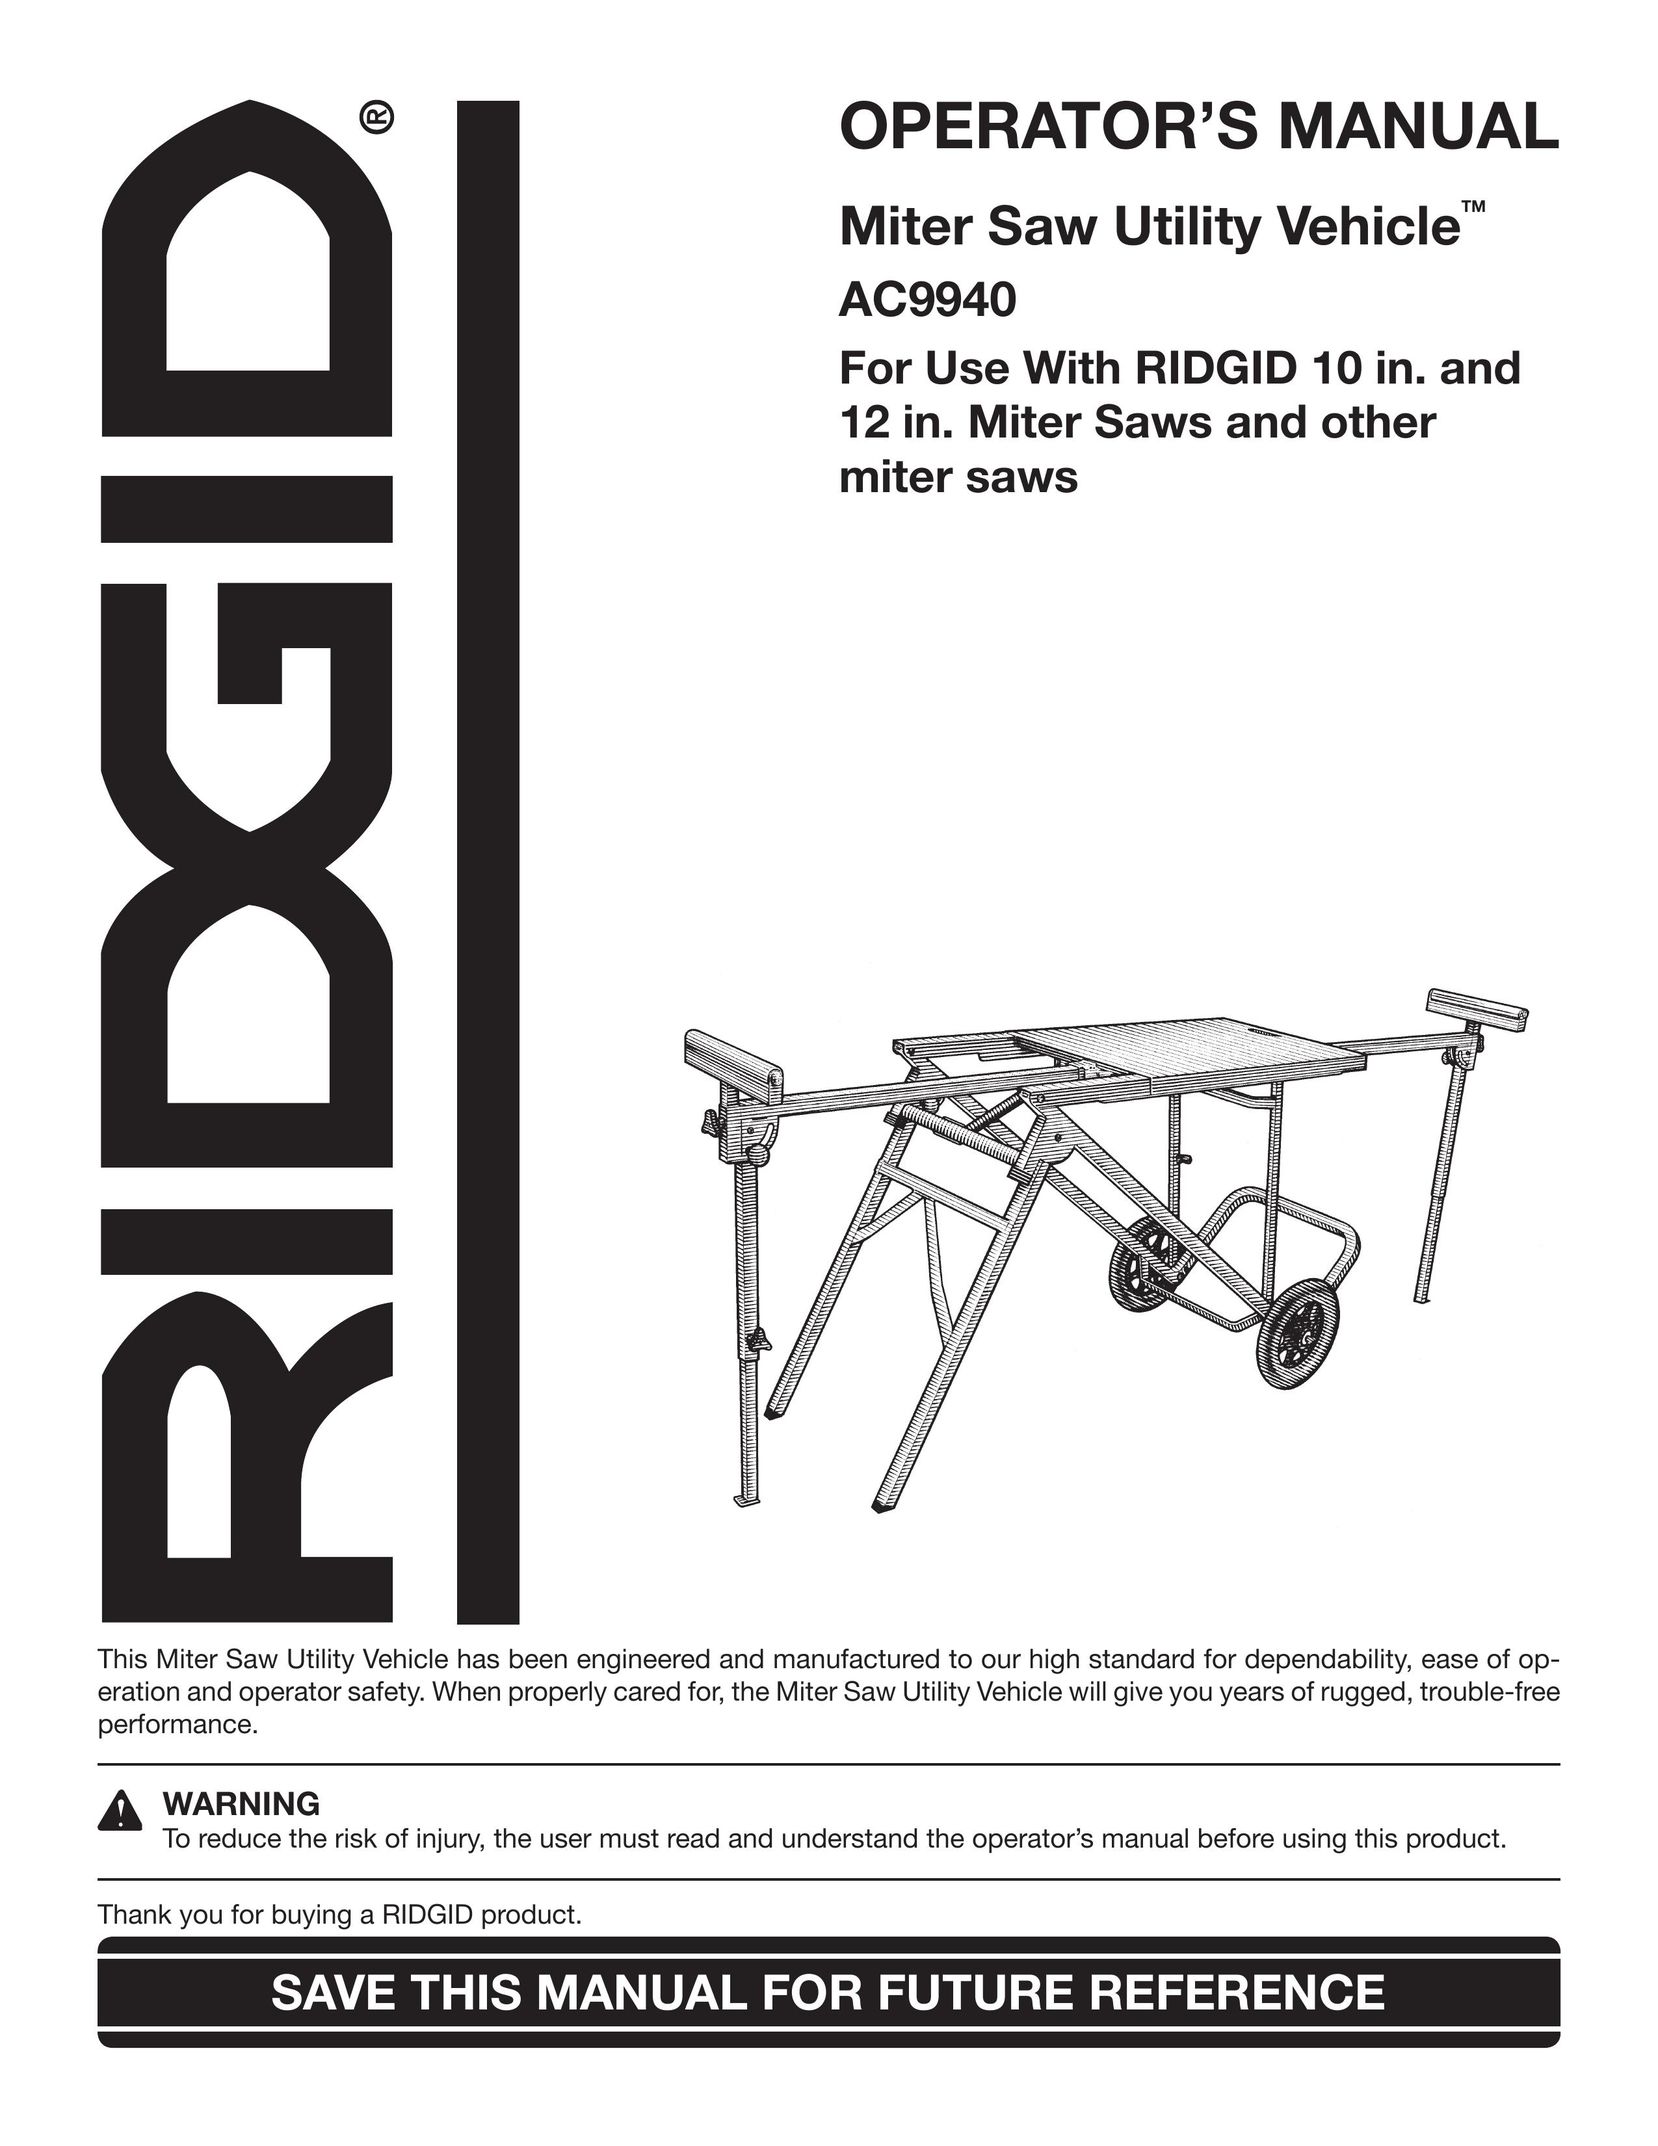 RIDGID AC9940 Saw User Manual